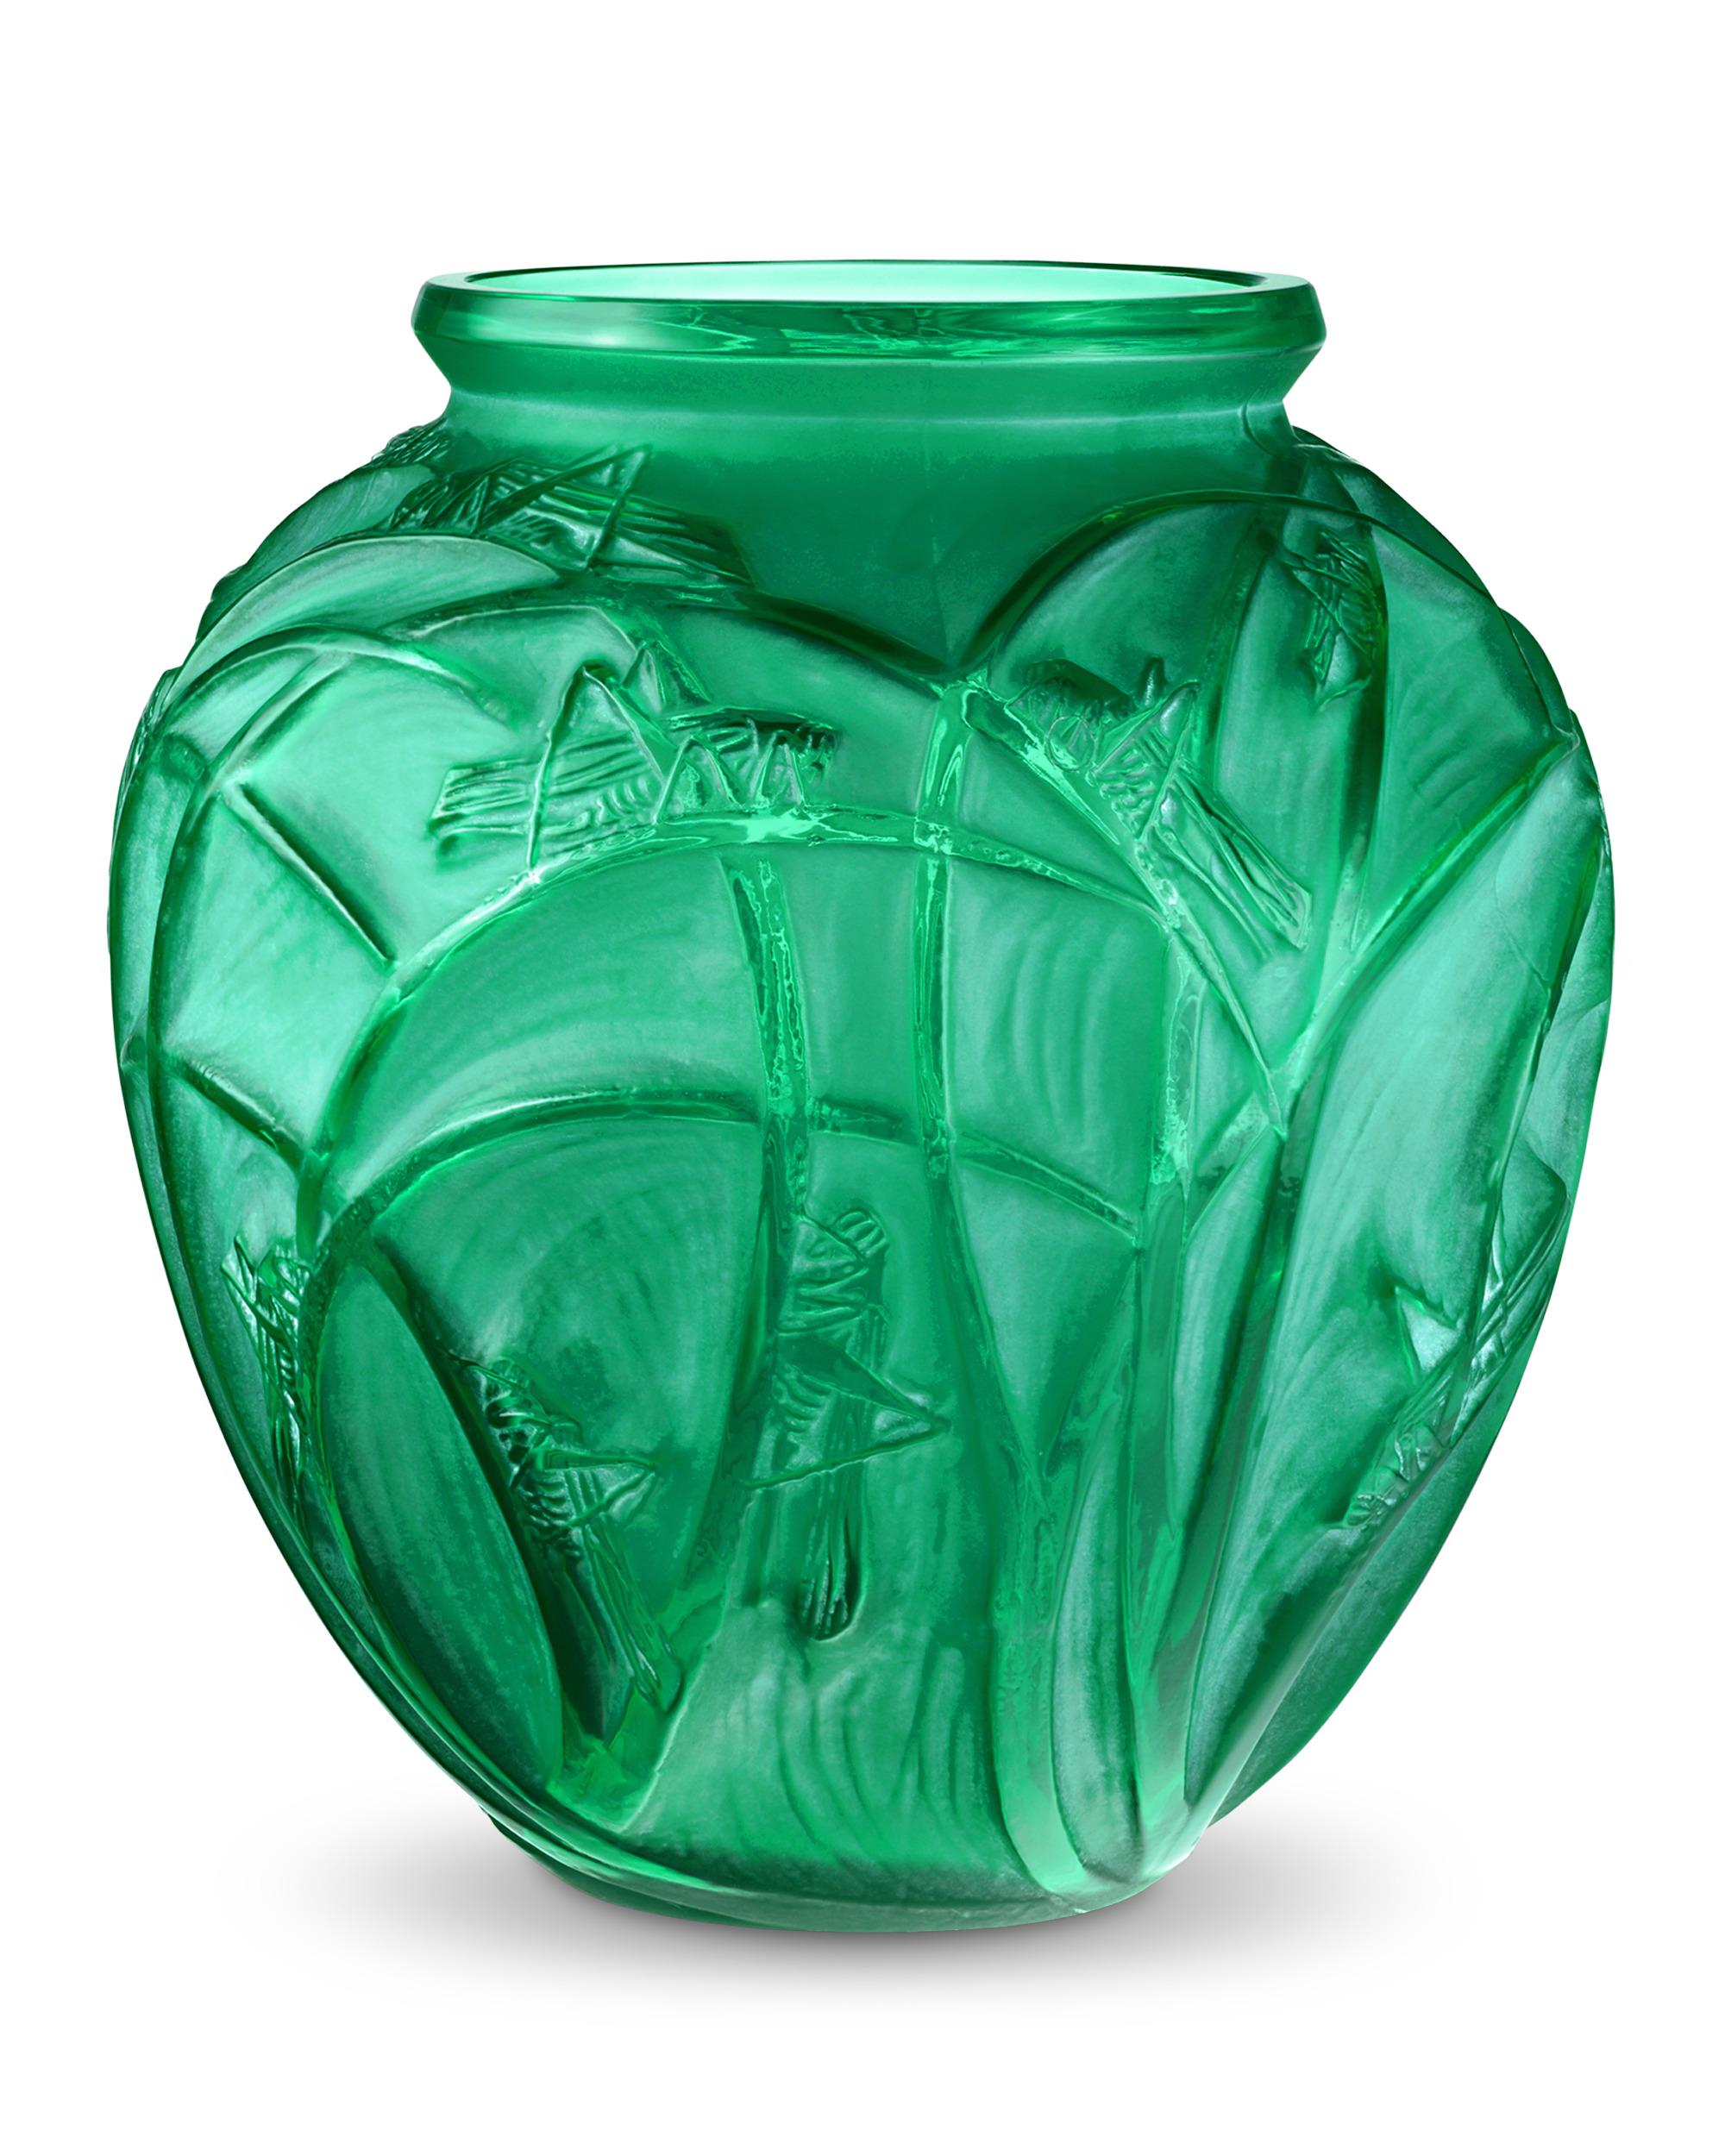 Dessiné par René Lalique en 1912, ce vase au motif de Sauterelles présente des détails de sauterelles fantaisistes reposant sur de longs roseaux ou des brins d'herbe. La Nature met en évidence l'amour du maître pour les formes audacieuses et les